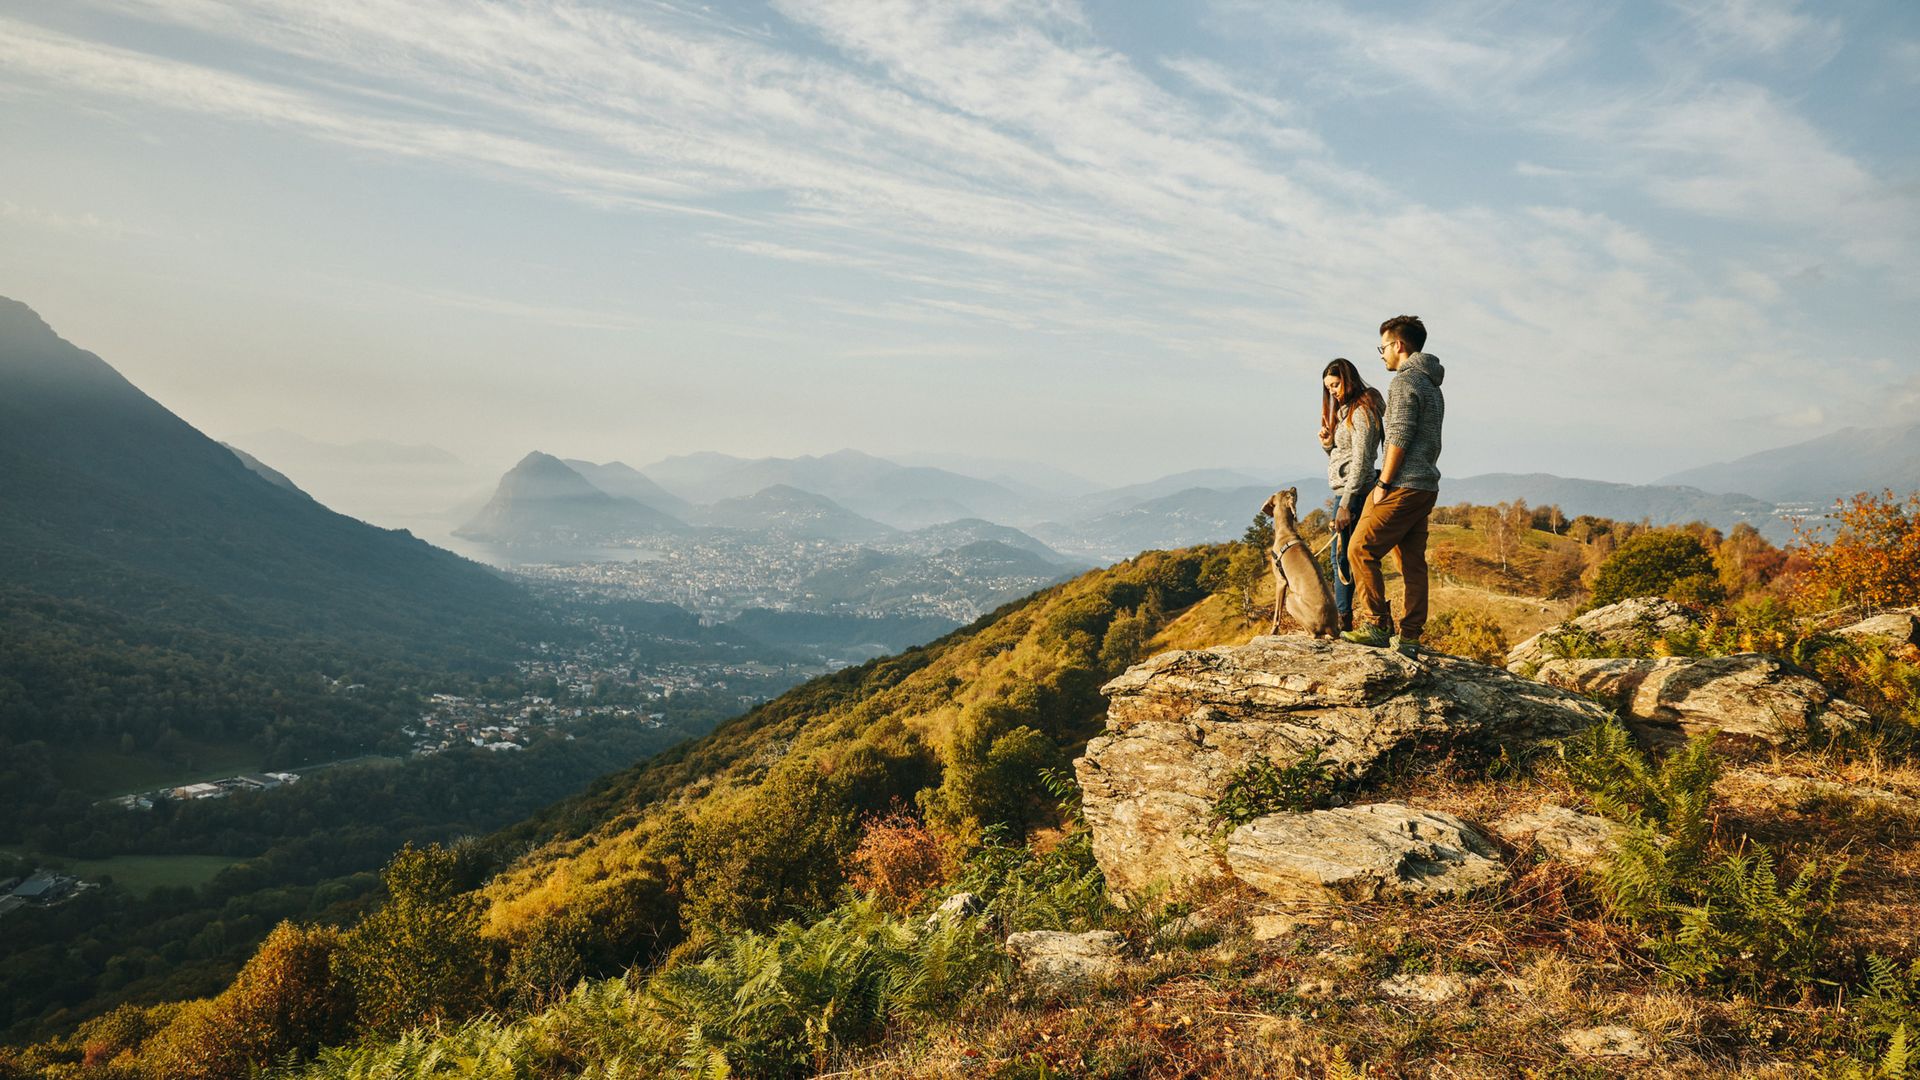 Un homme et une femme se tiennent avec leur chien sur un rocher au sommet d'une petite montagne. La vue s'étend jusqu'à Lugano et au lac. Le soleil couchant illumine la scène d'une lumière dorée et brillante.